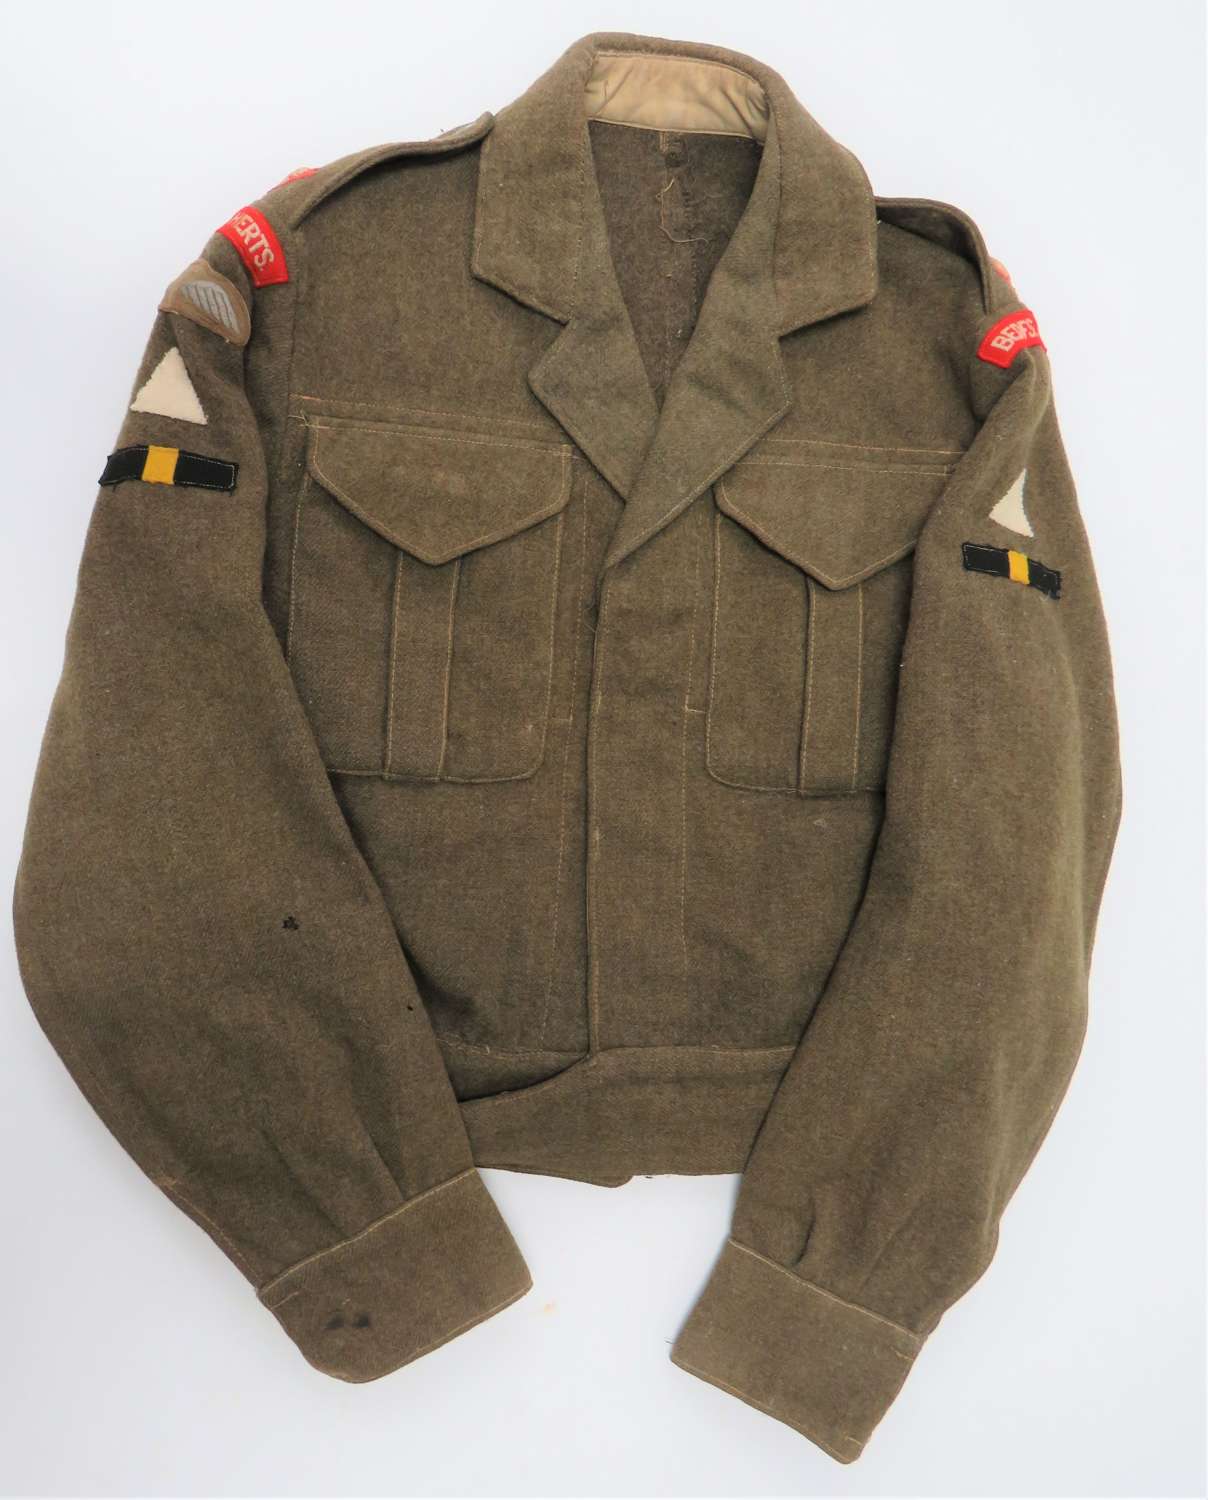 Bedfordshire & Hertfordshire 1st Division Officer Battle Dress Jacket